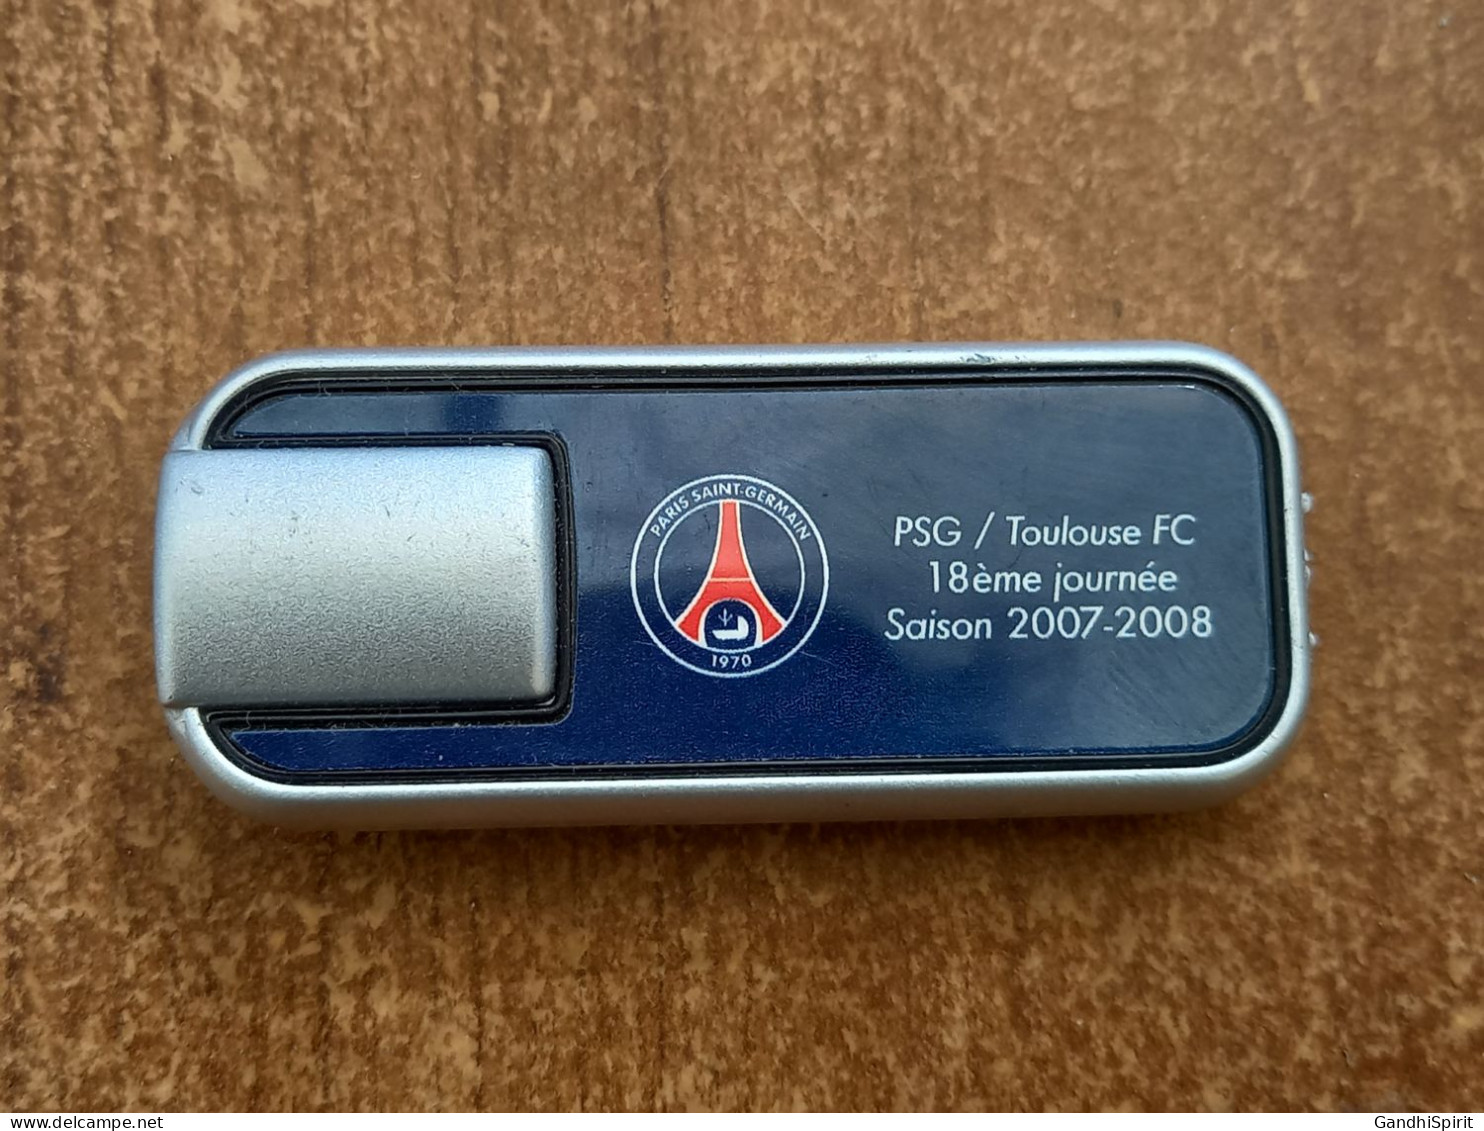 PSG Paris Saint Germain / Toulouse FC 2007-2008 Laser Ou Petite Lampe De Poche - Kleding, Souvenirs & Andere